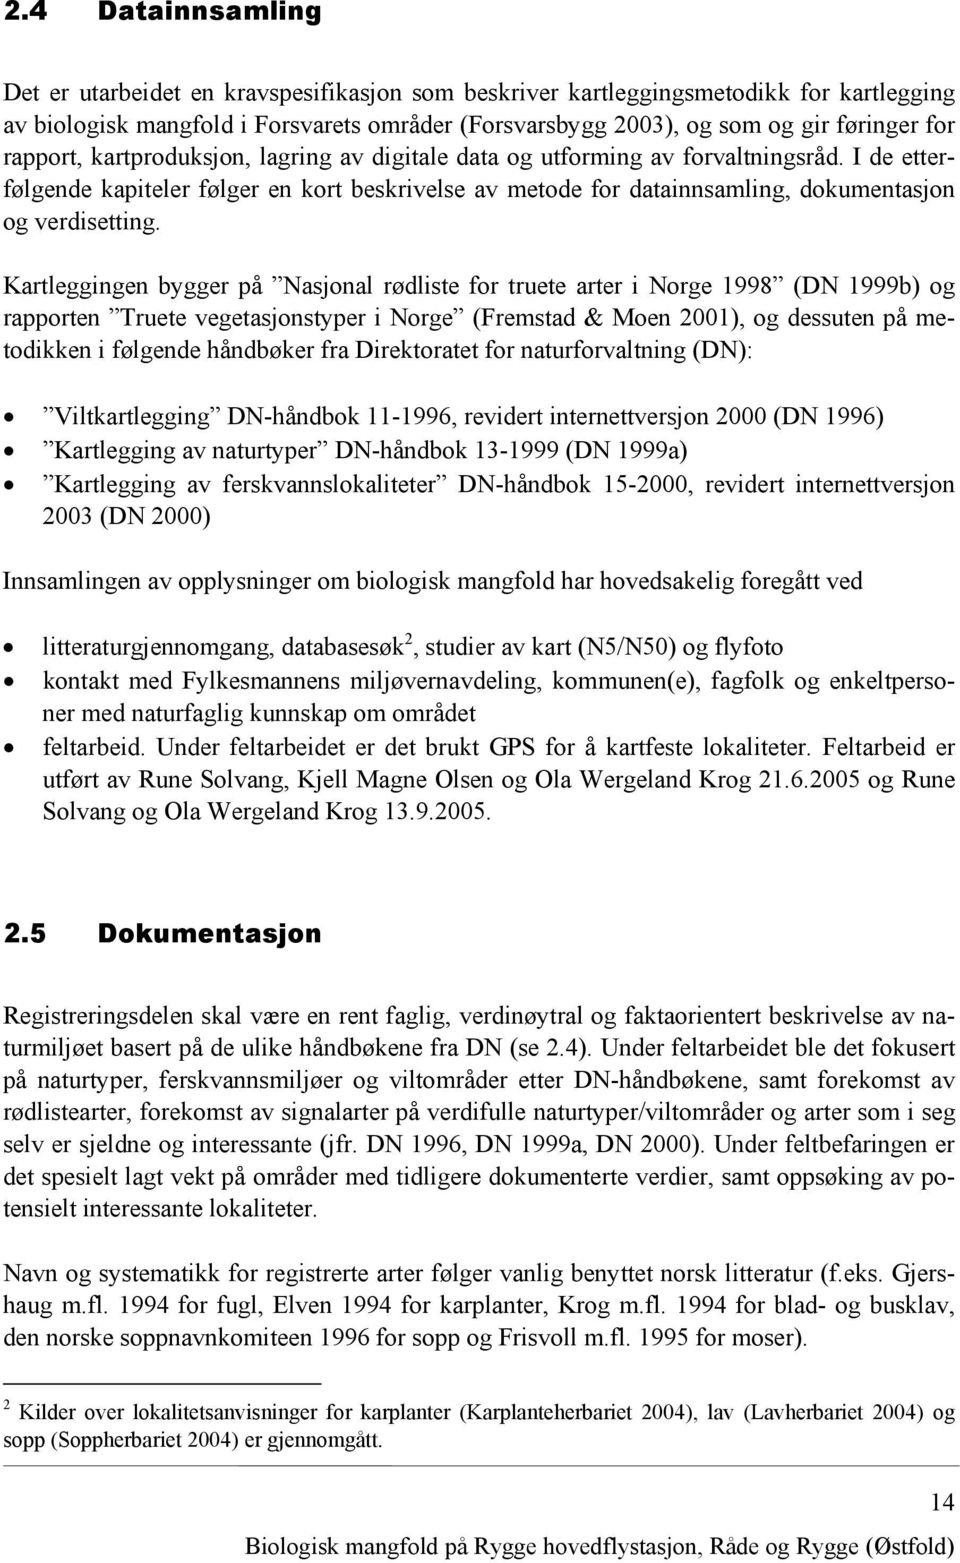 Kartleggingen bygger på Nasjonal rødliste for truete arter i Norge 1998 (DN 1999b) og rapporten Truete vegetasjonstyper i Norge (Fremstad & Moen 2001), og dessuten på metodikken i følgende håndbøker